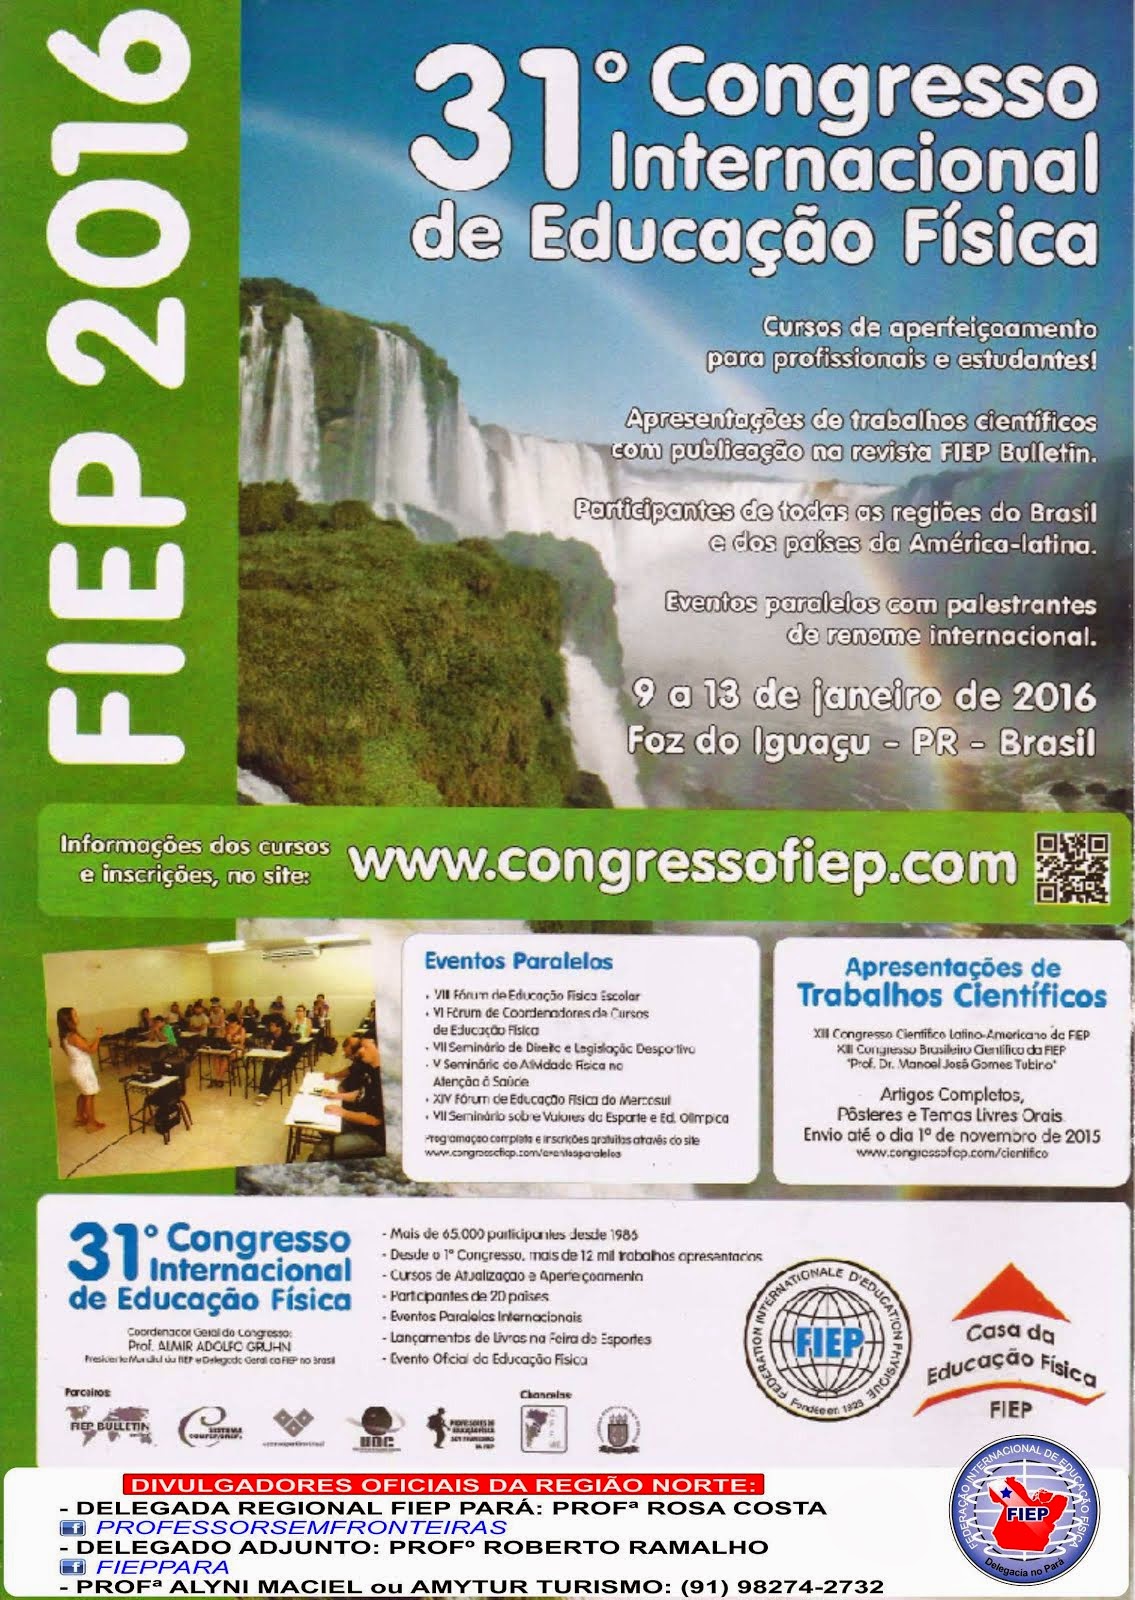 Viva o 31º Congresso Internacional de Educação Física!